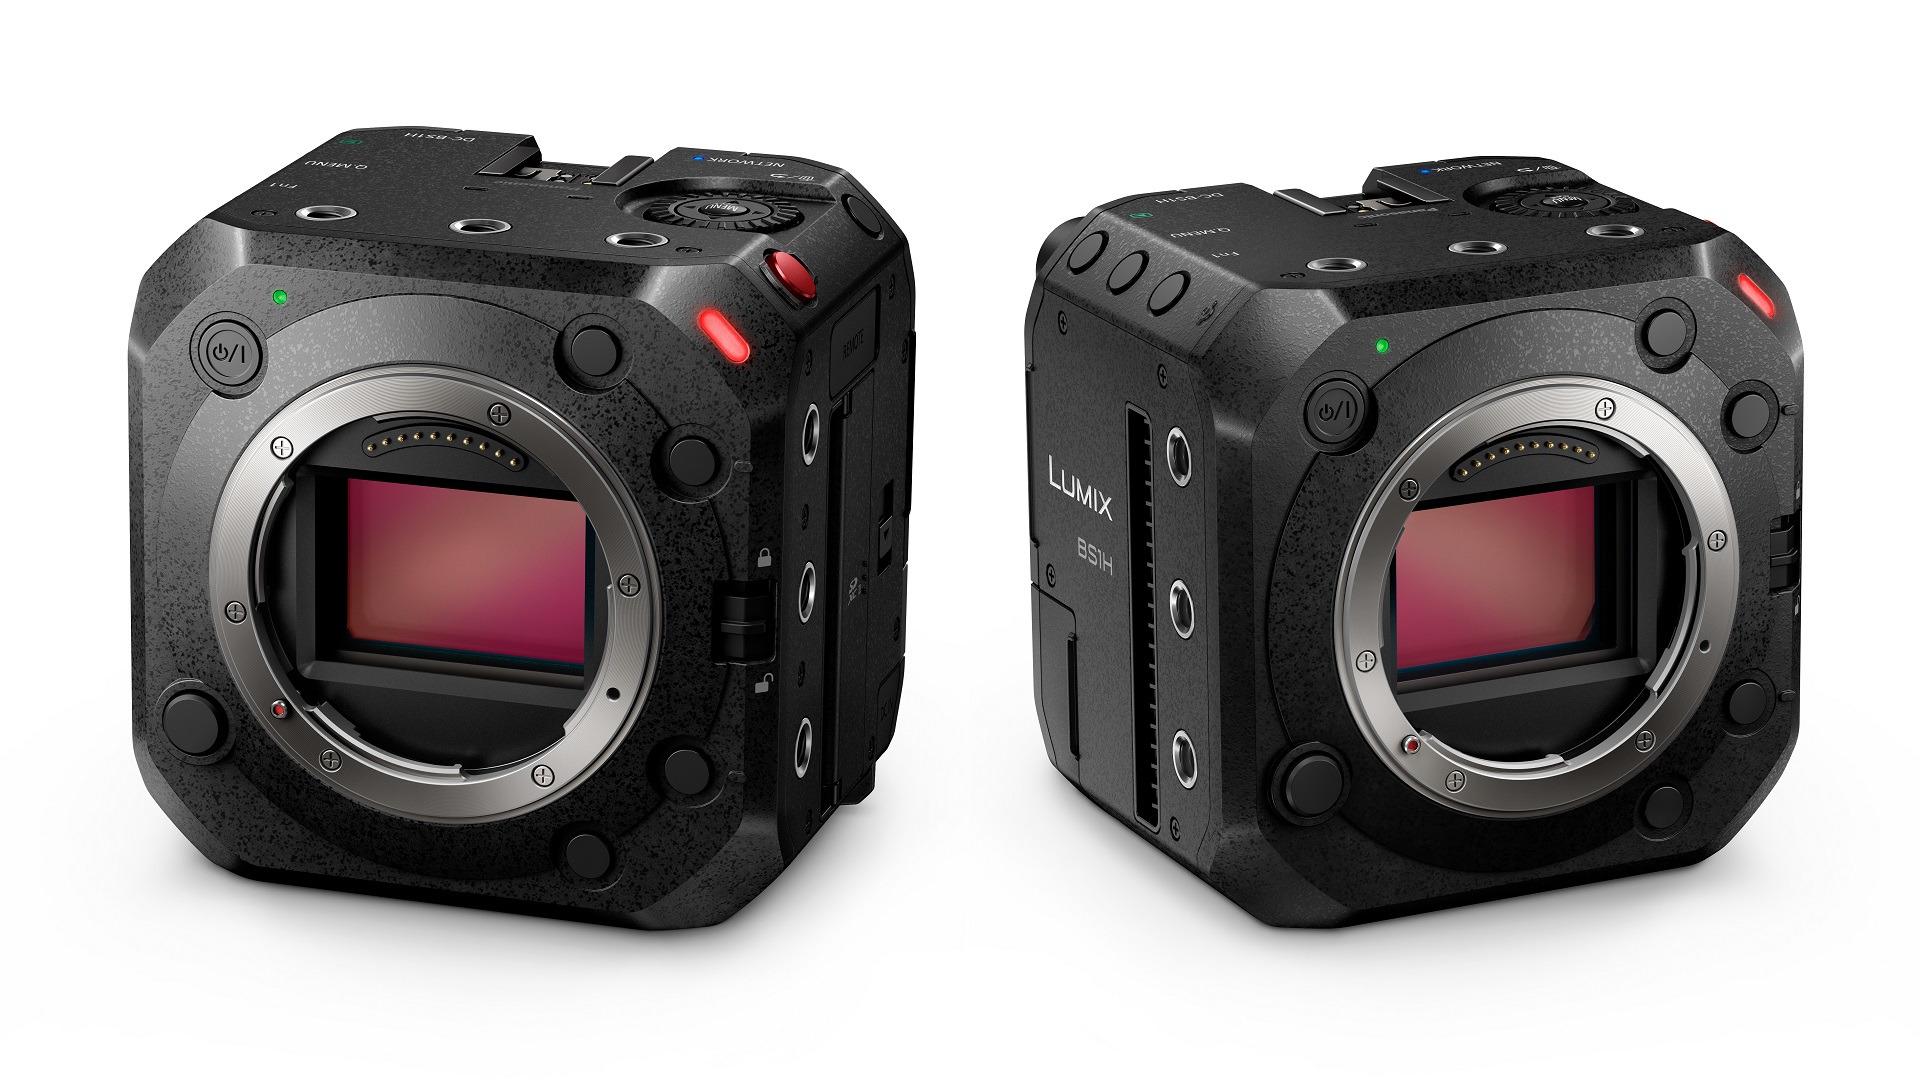 パナソニックがボックス型フルフレームカメラLUMIX BS1Hを発表 | CineD